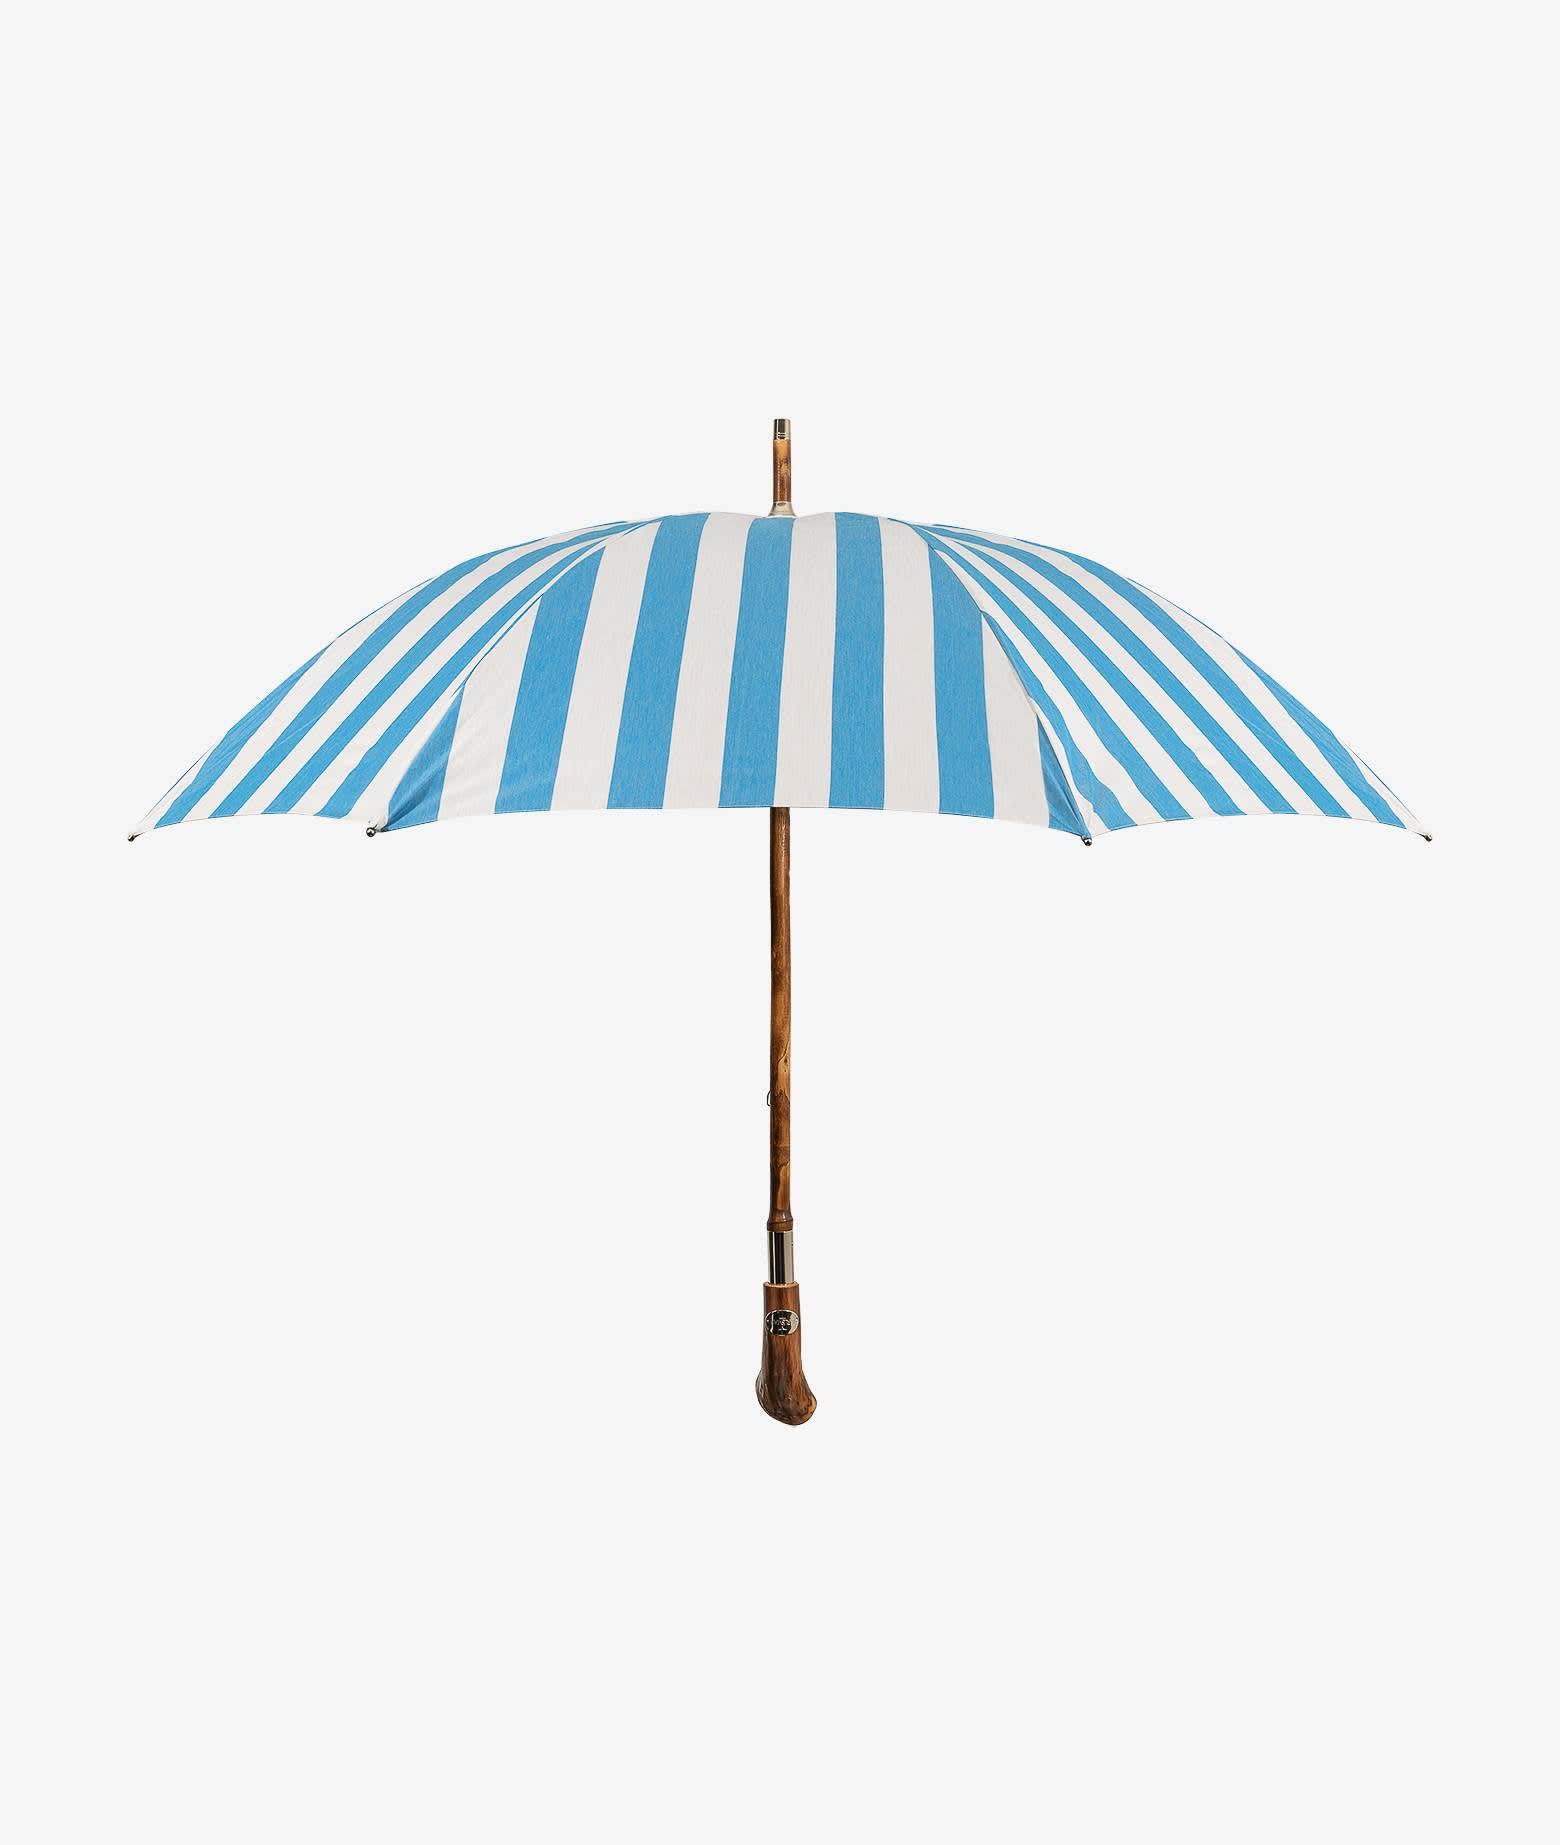 Larusmiani Umbrella Pic Nic Umbrella In Lightblue